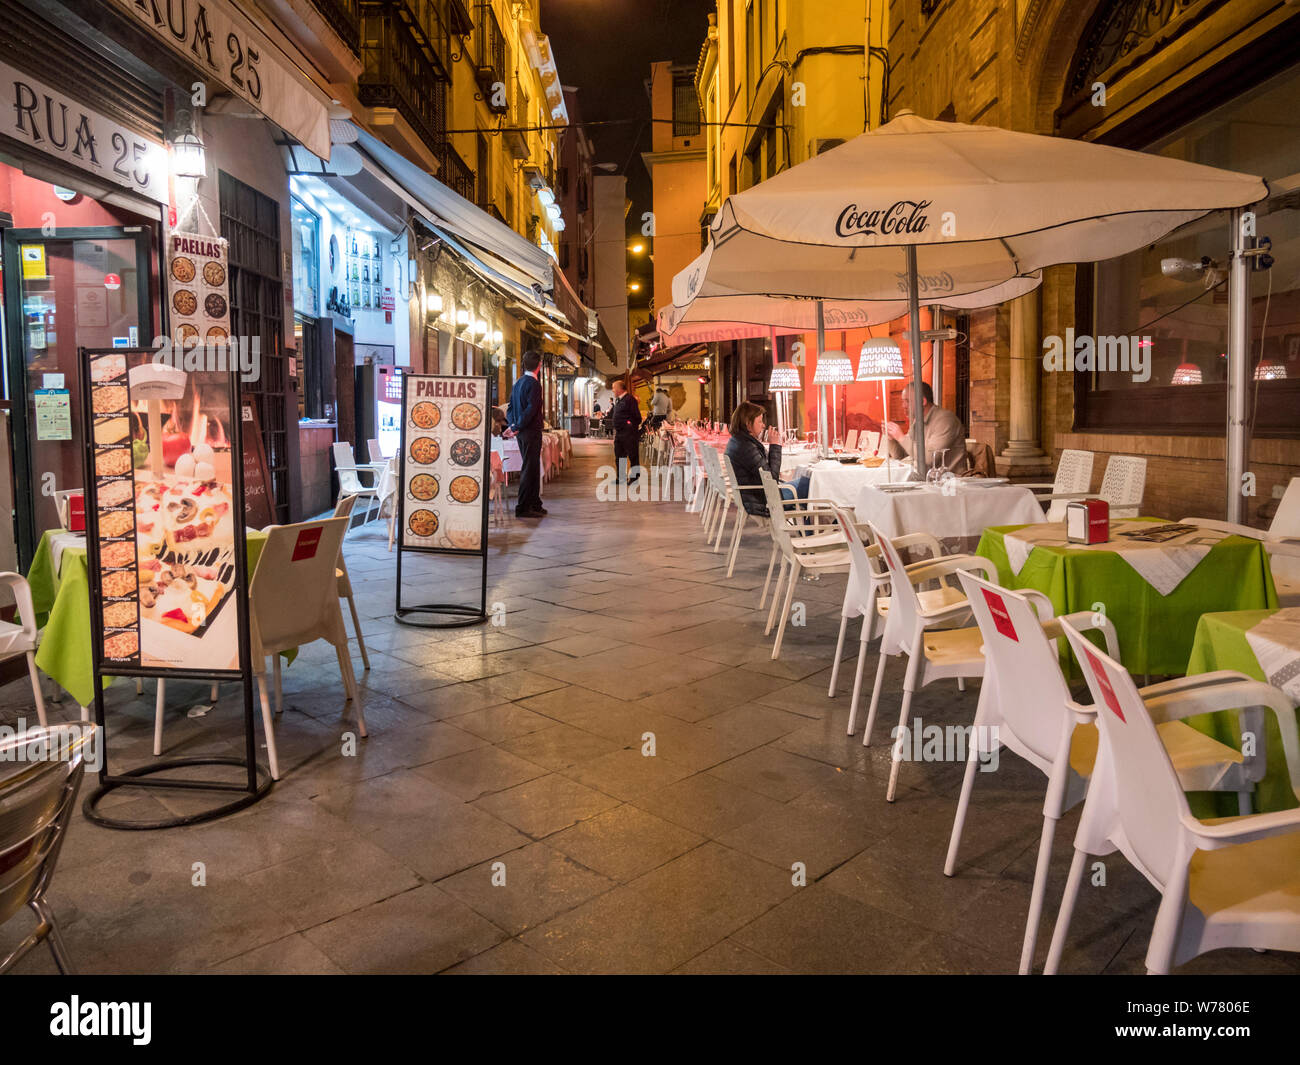 Une rue bordée de cafés et restaurants de nuit à Seviile Espagne avec des gens assis à des tables dehors, sur le trottoir et les serveurs en attente de cust Banque D'Images